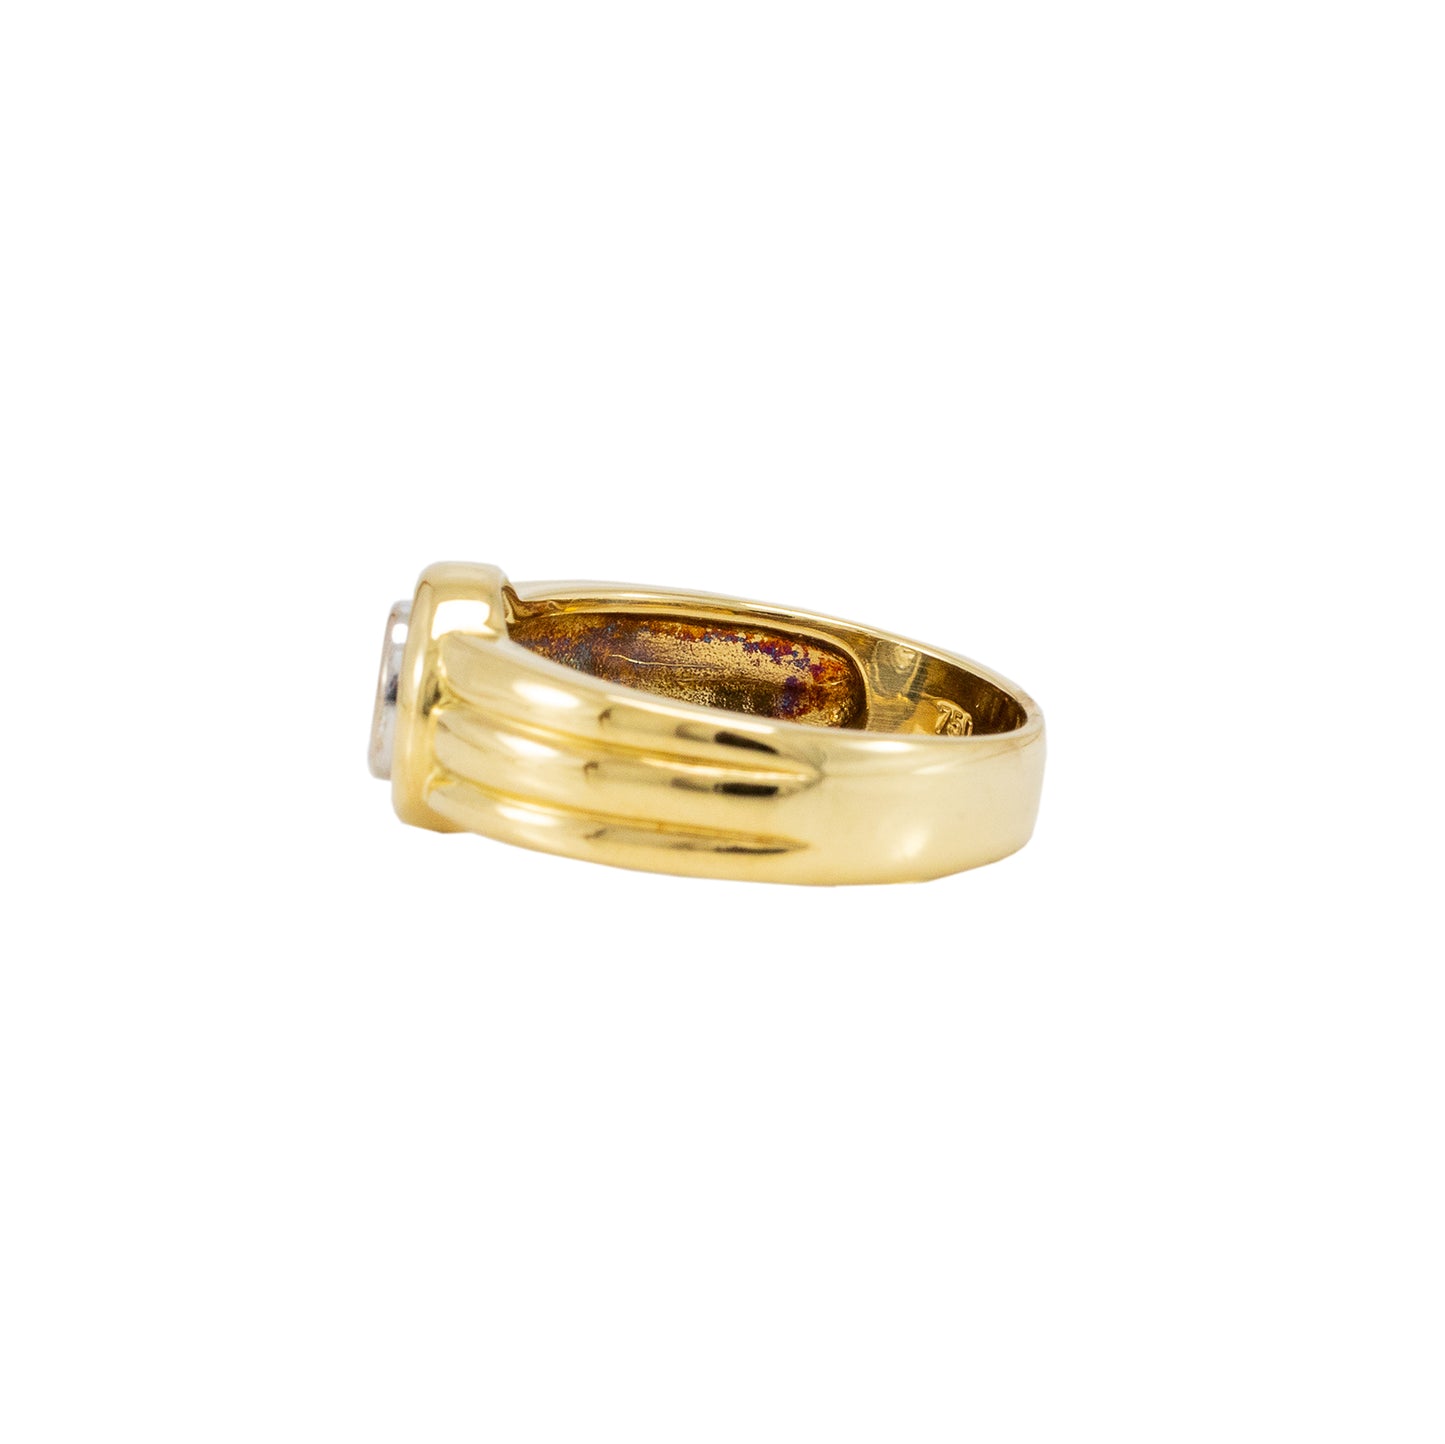 Diamond ring yellow gold 750 18K women's jewelry engagement ring women's ring 